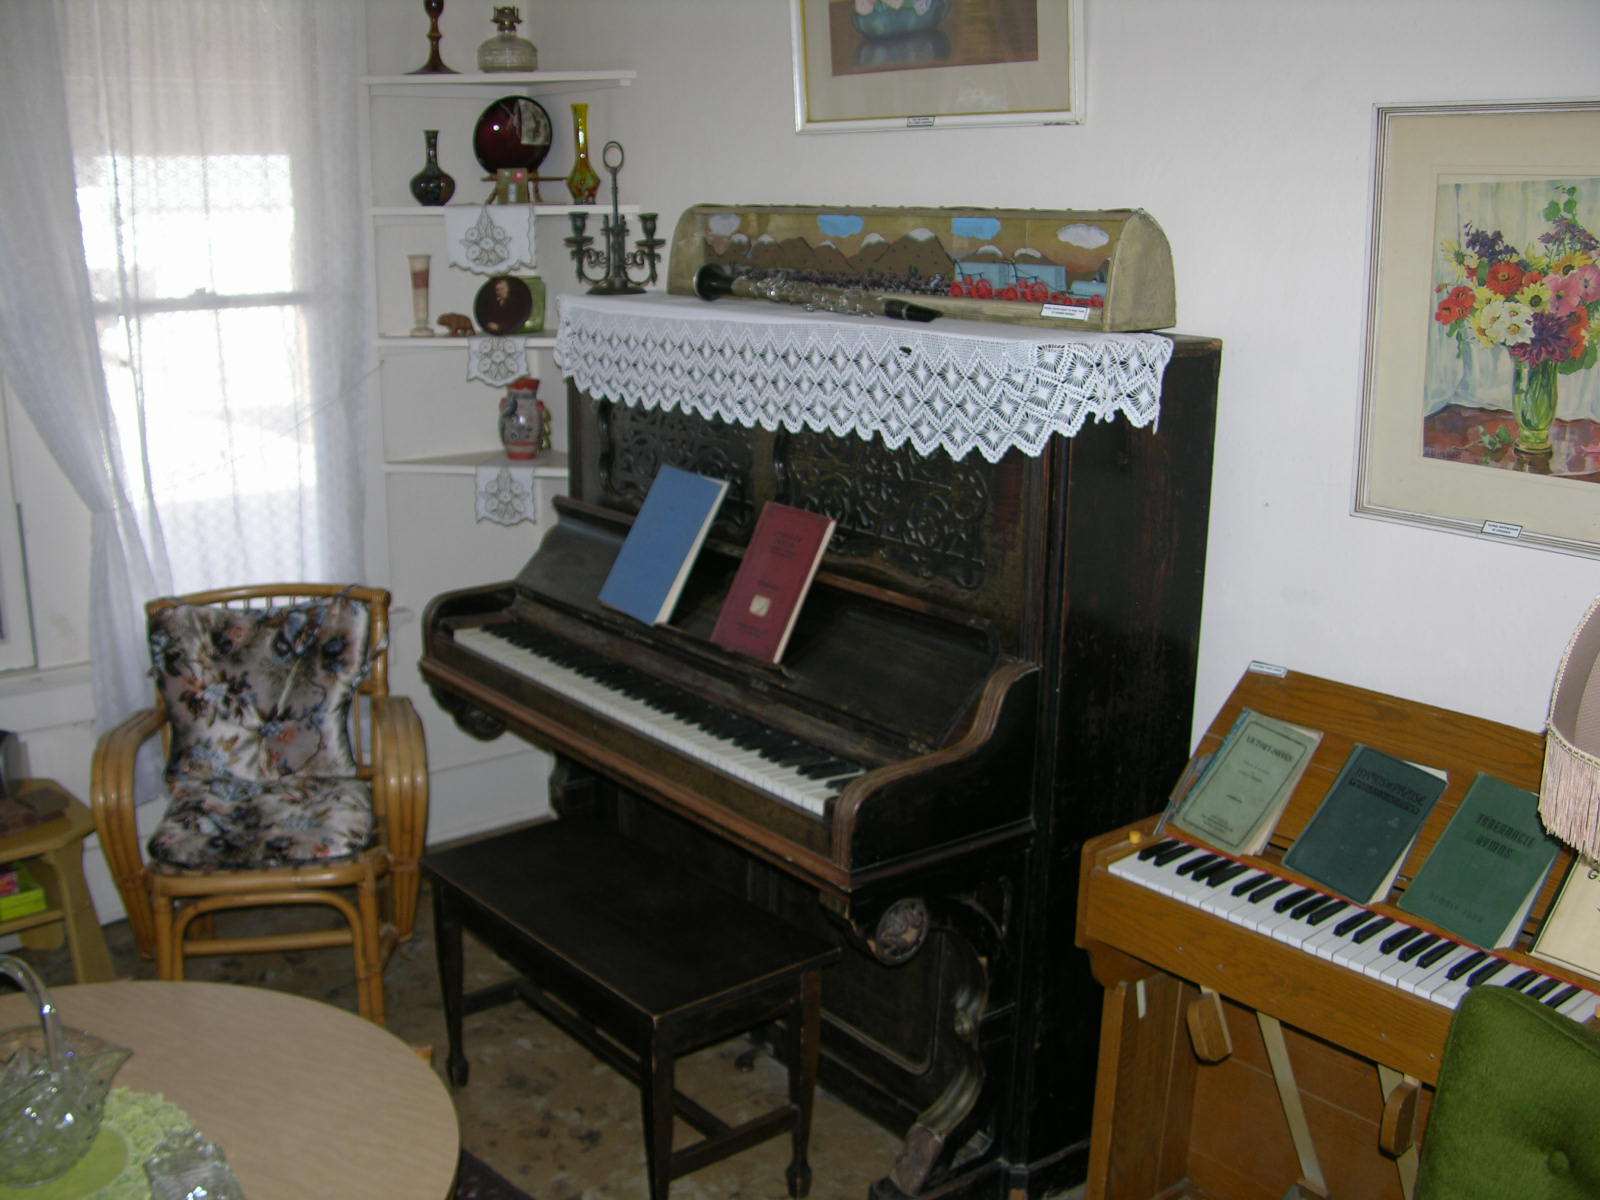 Piano and Organ